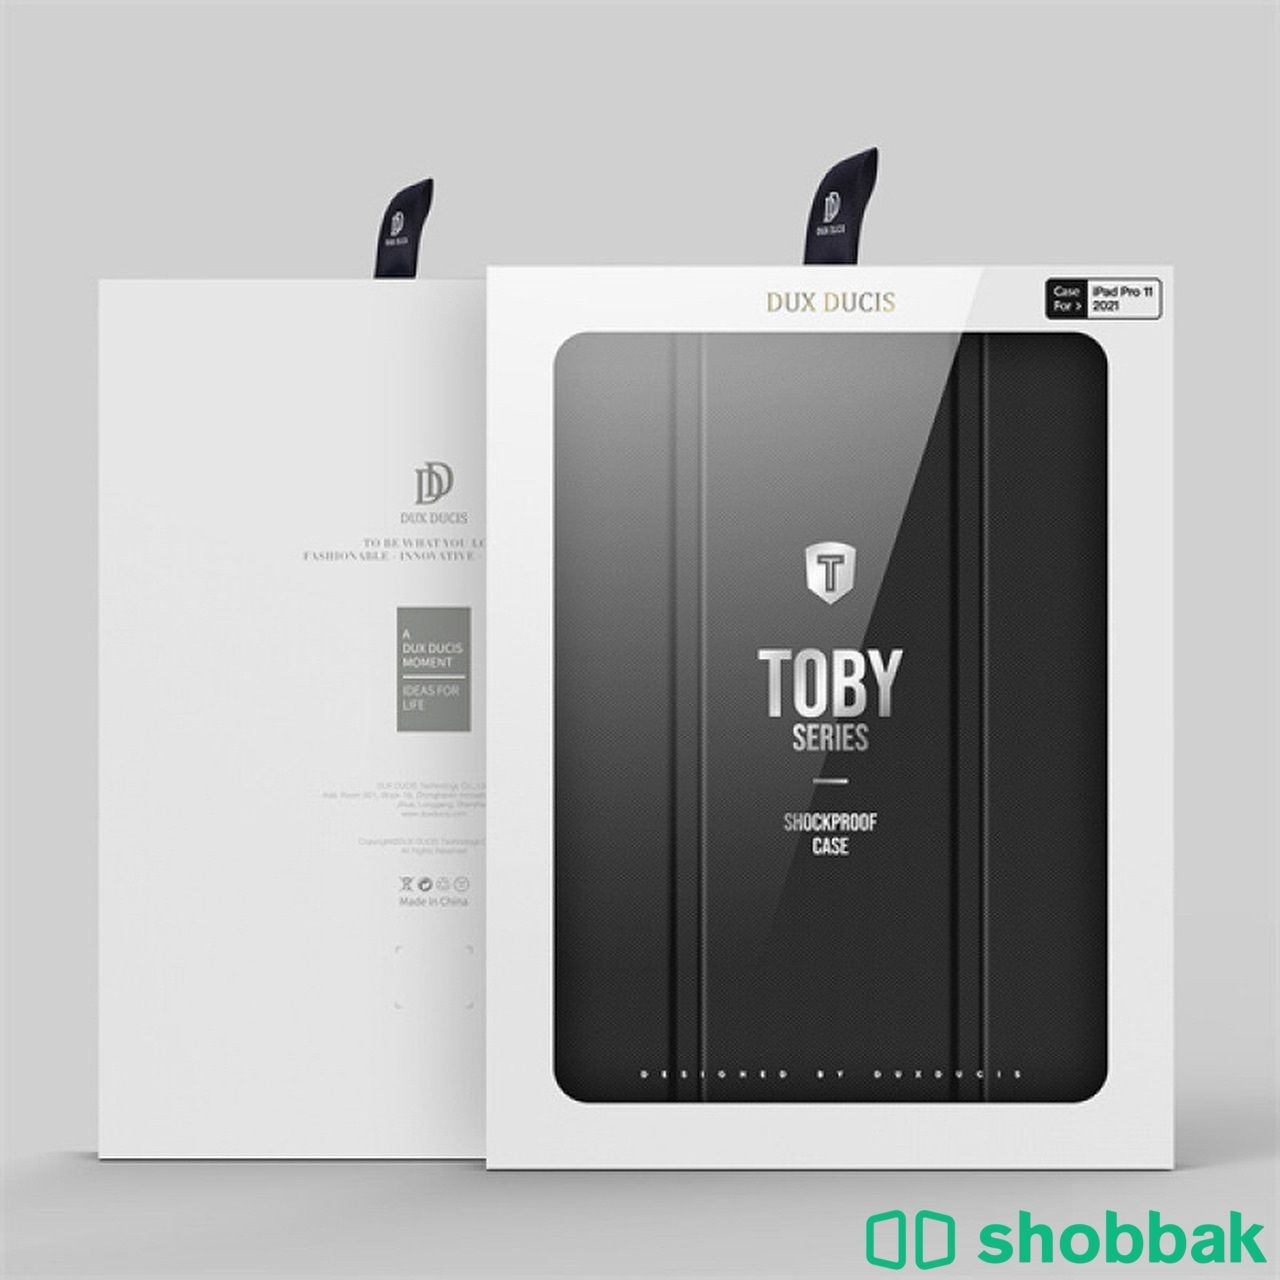  جراب iPad Pro Dux Ducis 12.9 (2021) Black  Shobbak Saudi Arabia